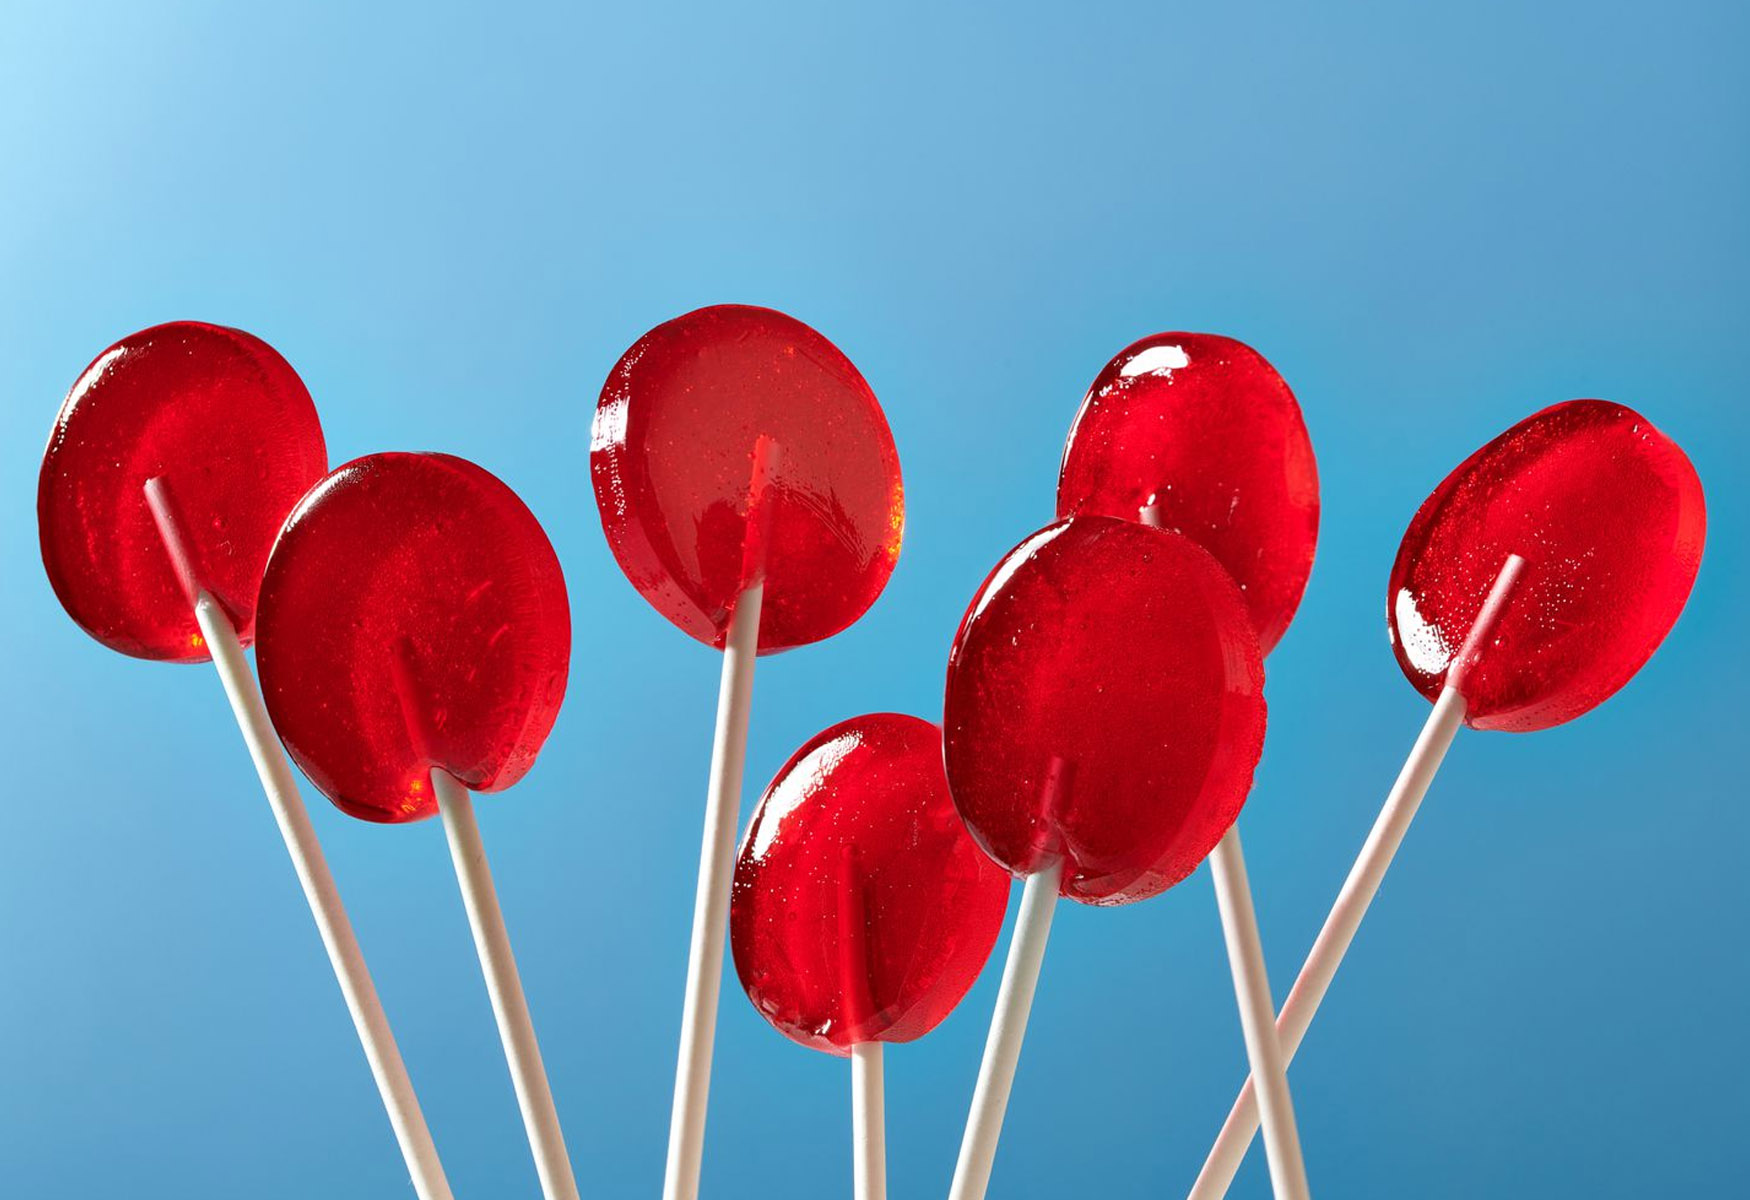 11-lollipop-nutrition-facts